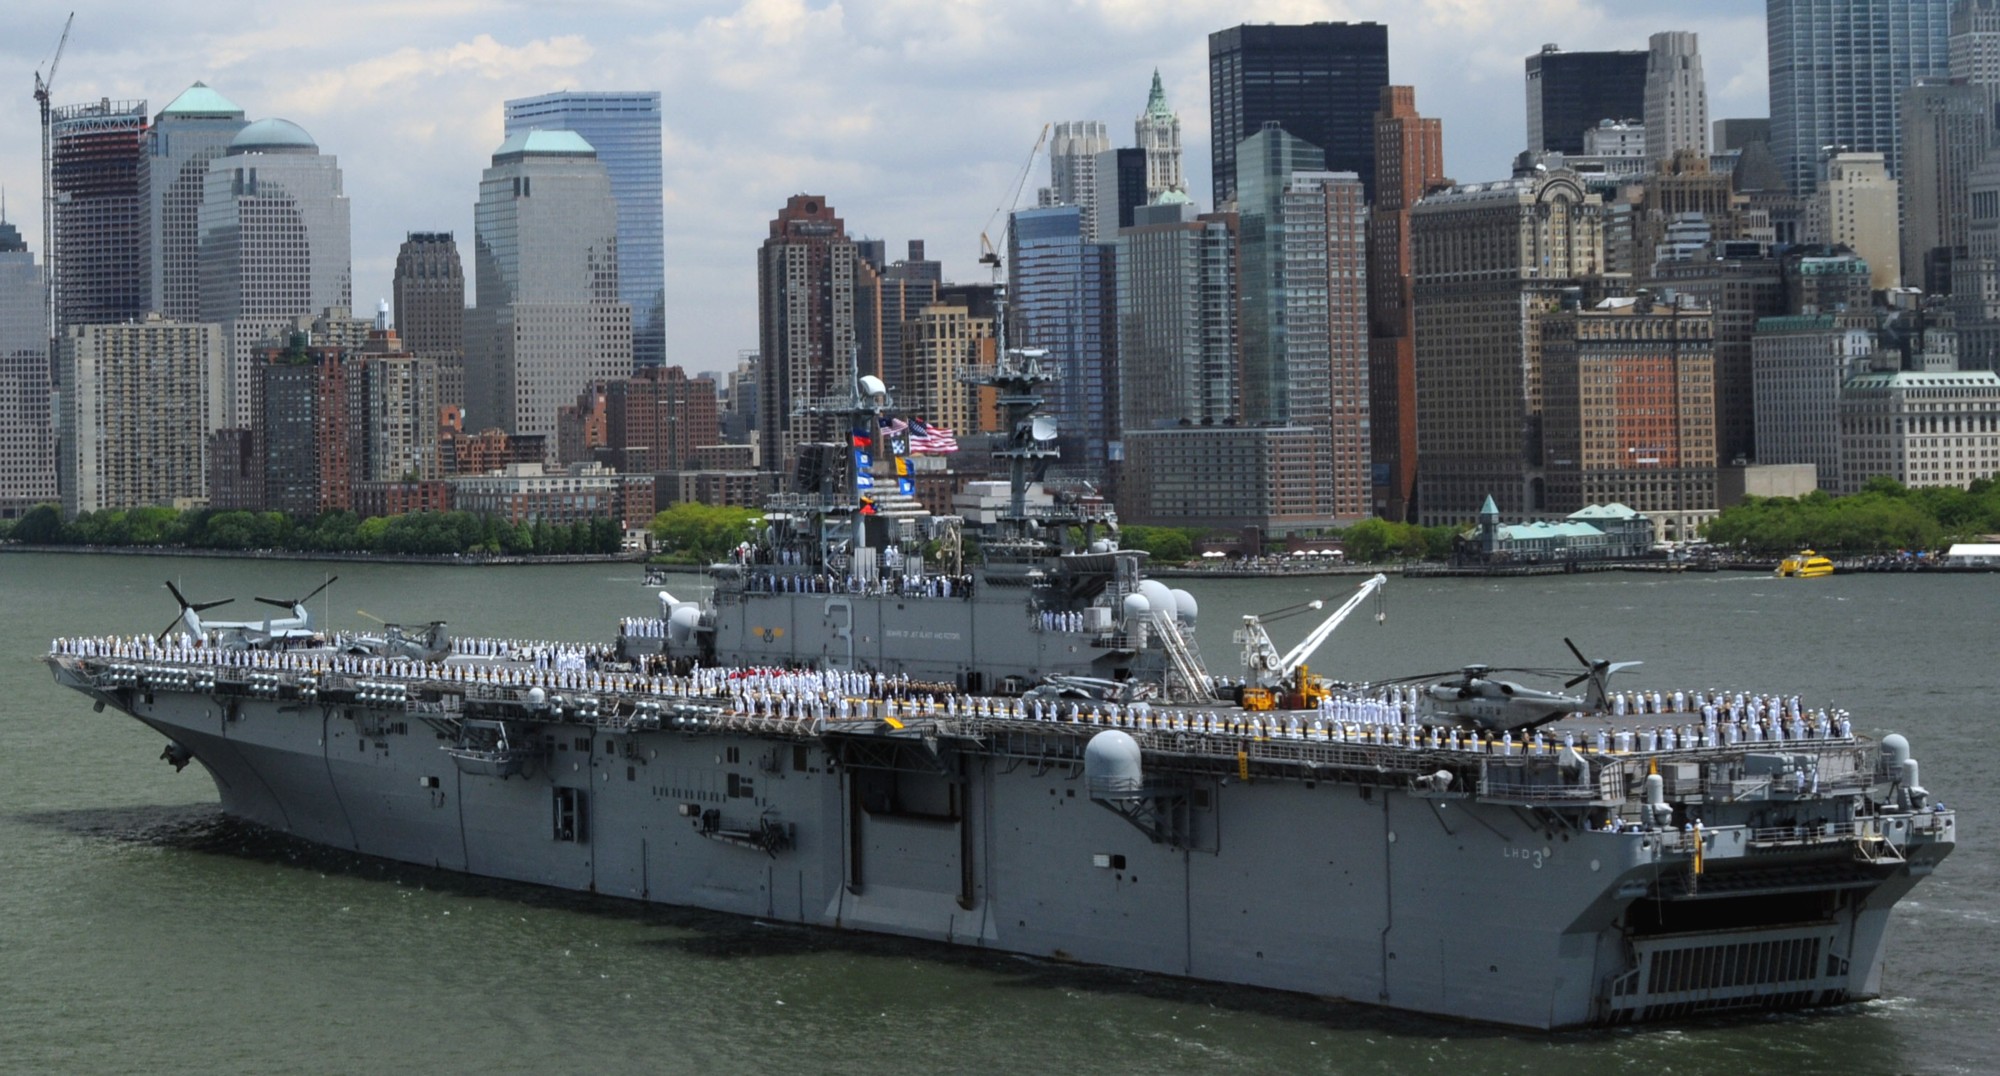 lhd-3 uss kearsarge wasp class amphibious assault ship landing dock us navy fleet week new york 64